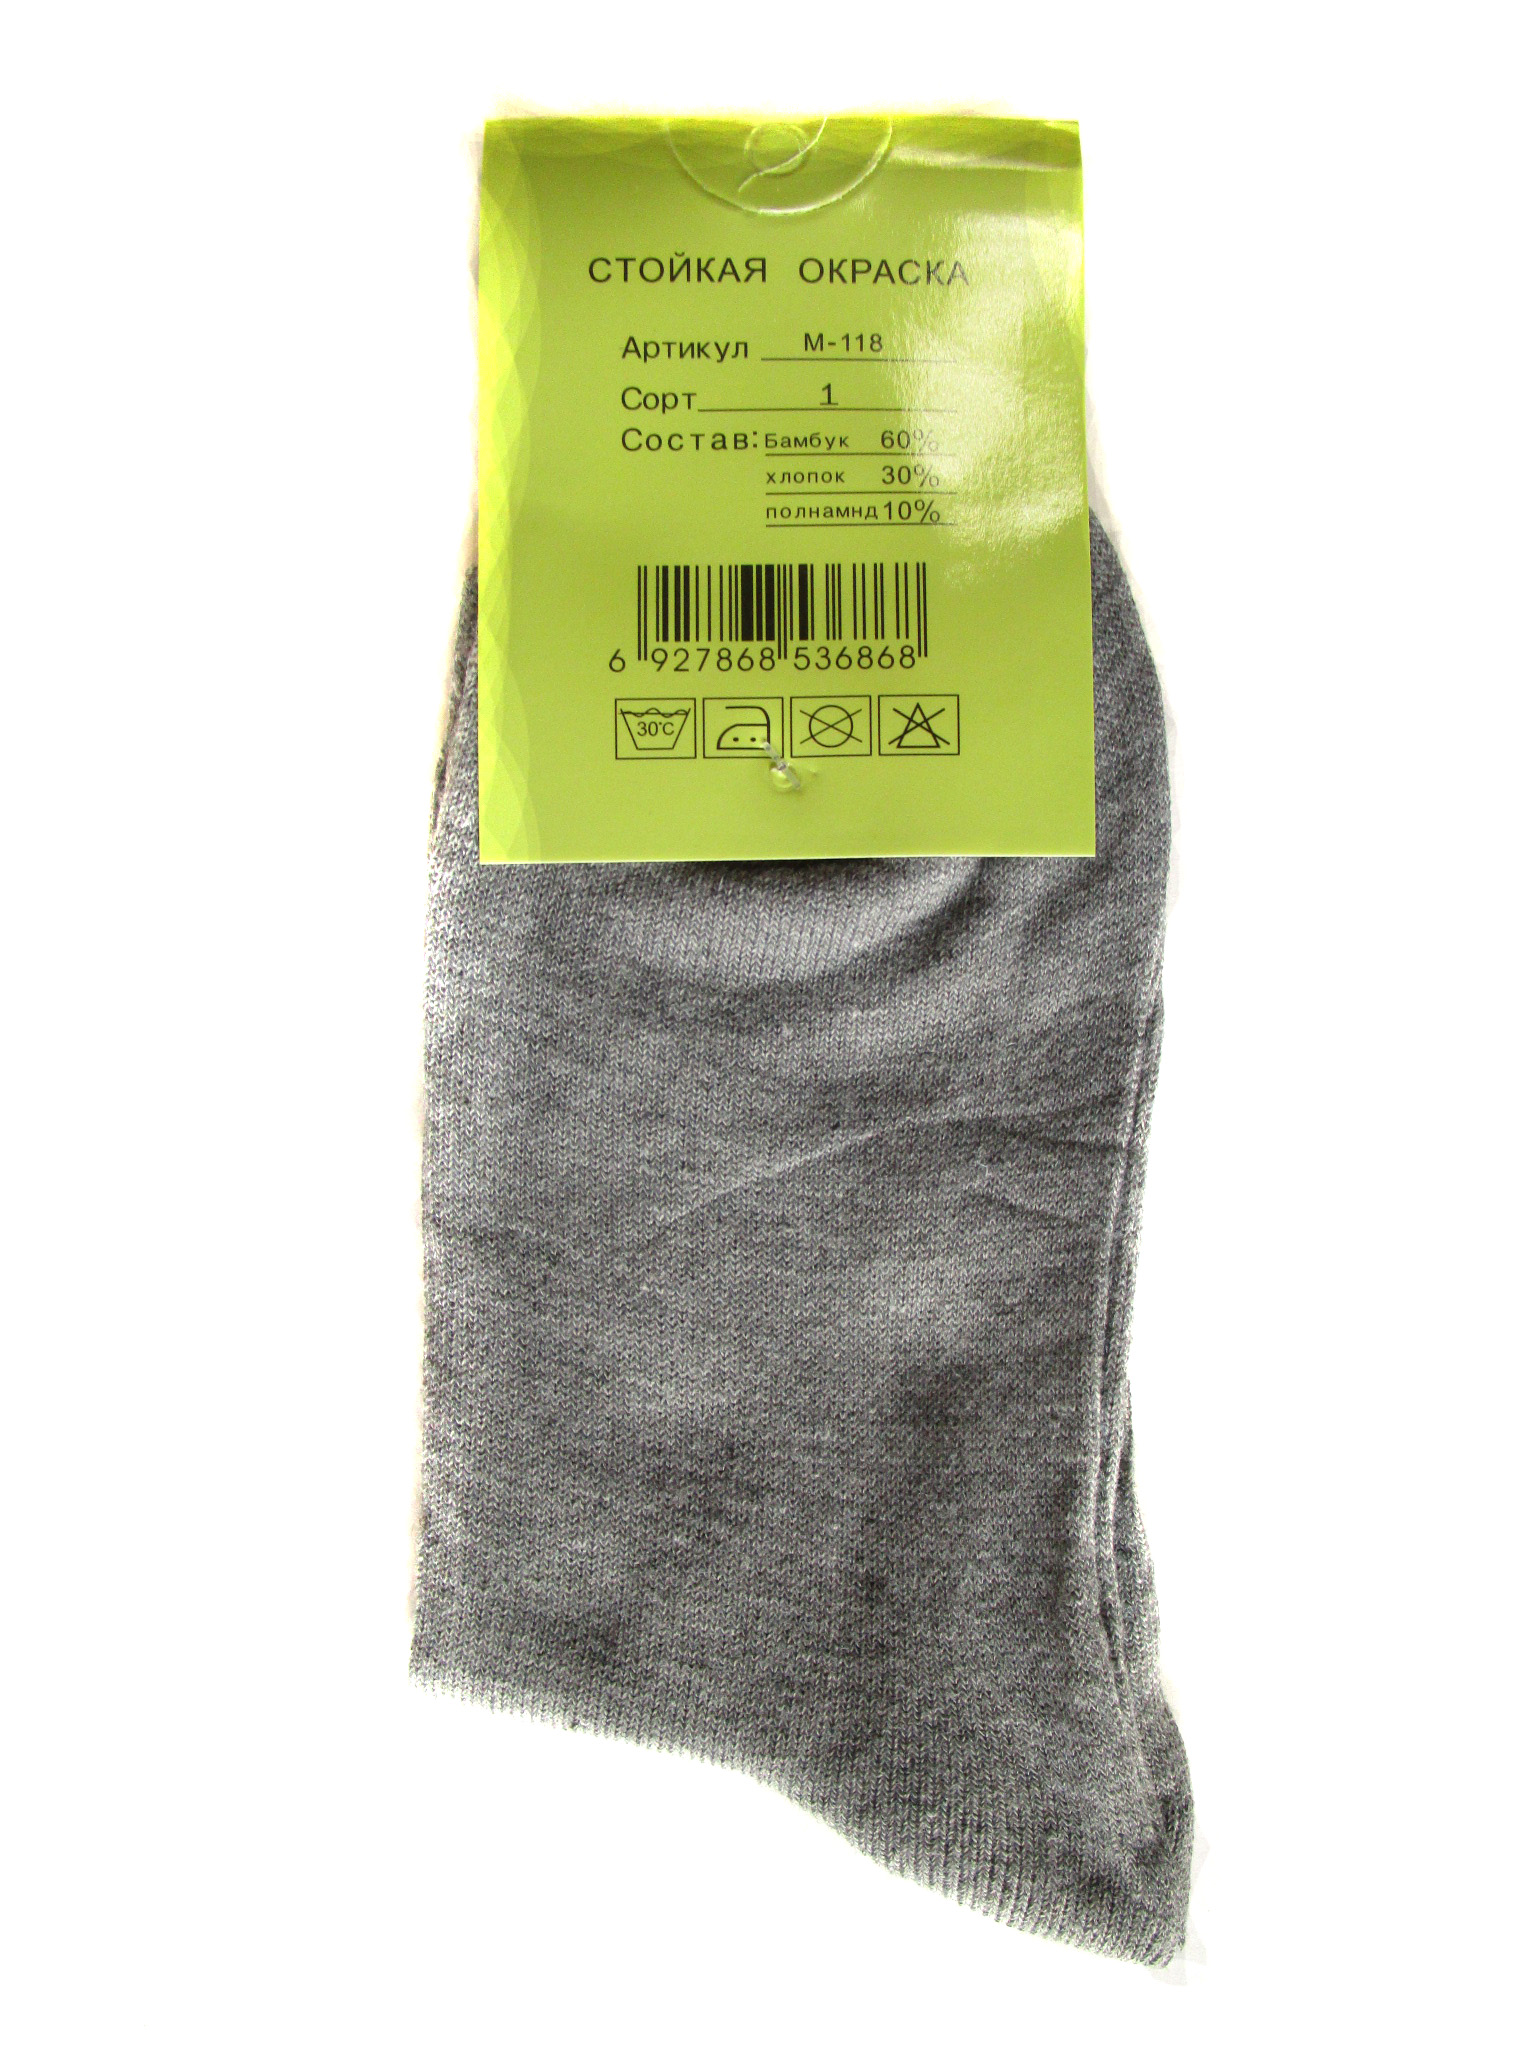 Мужские носки (арт.118)